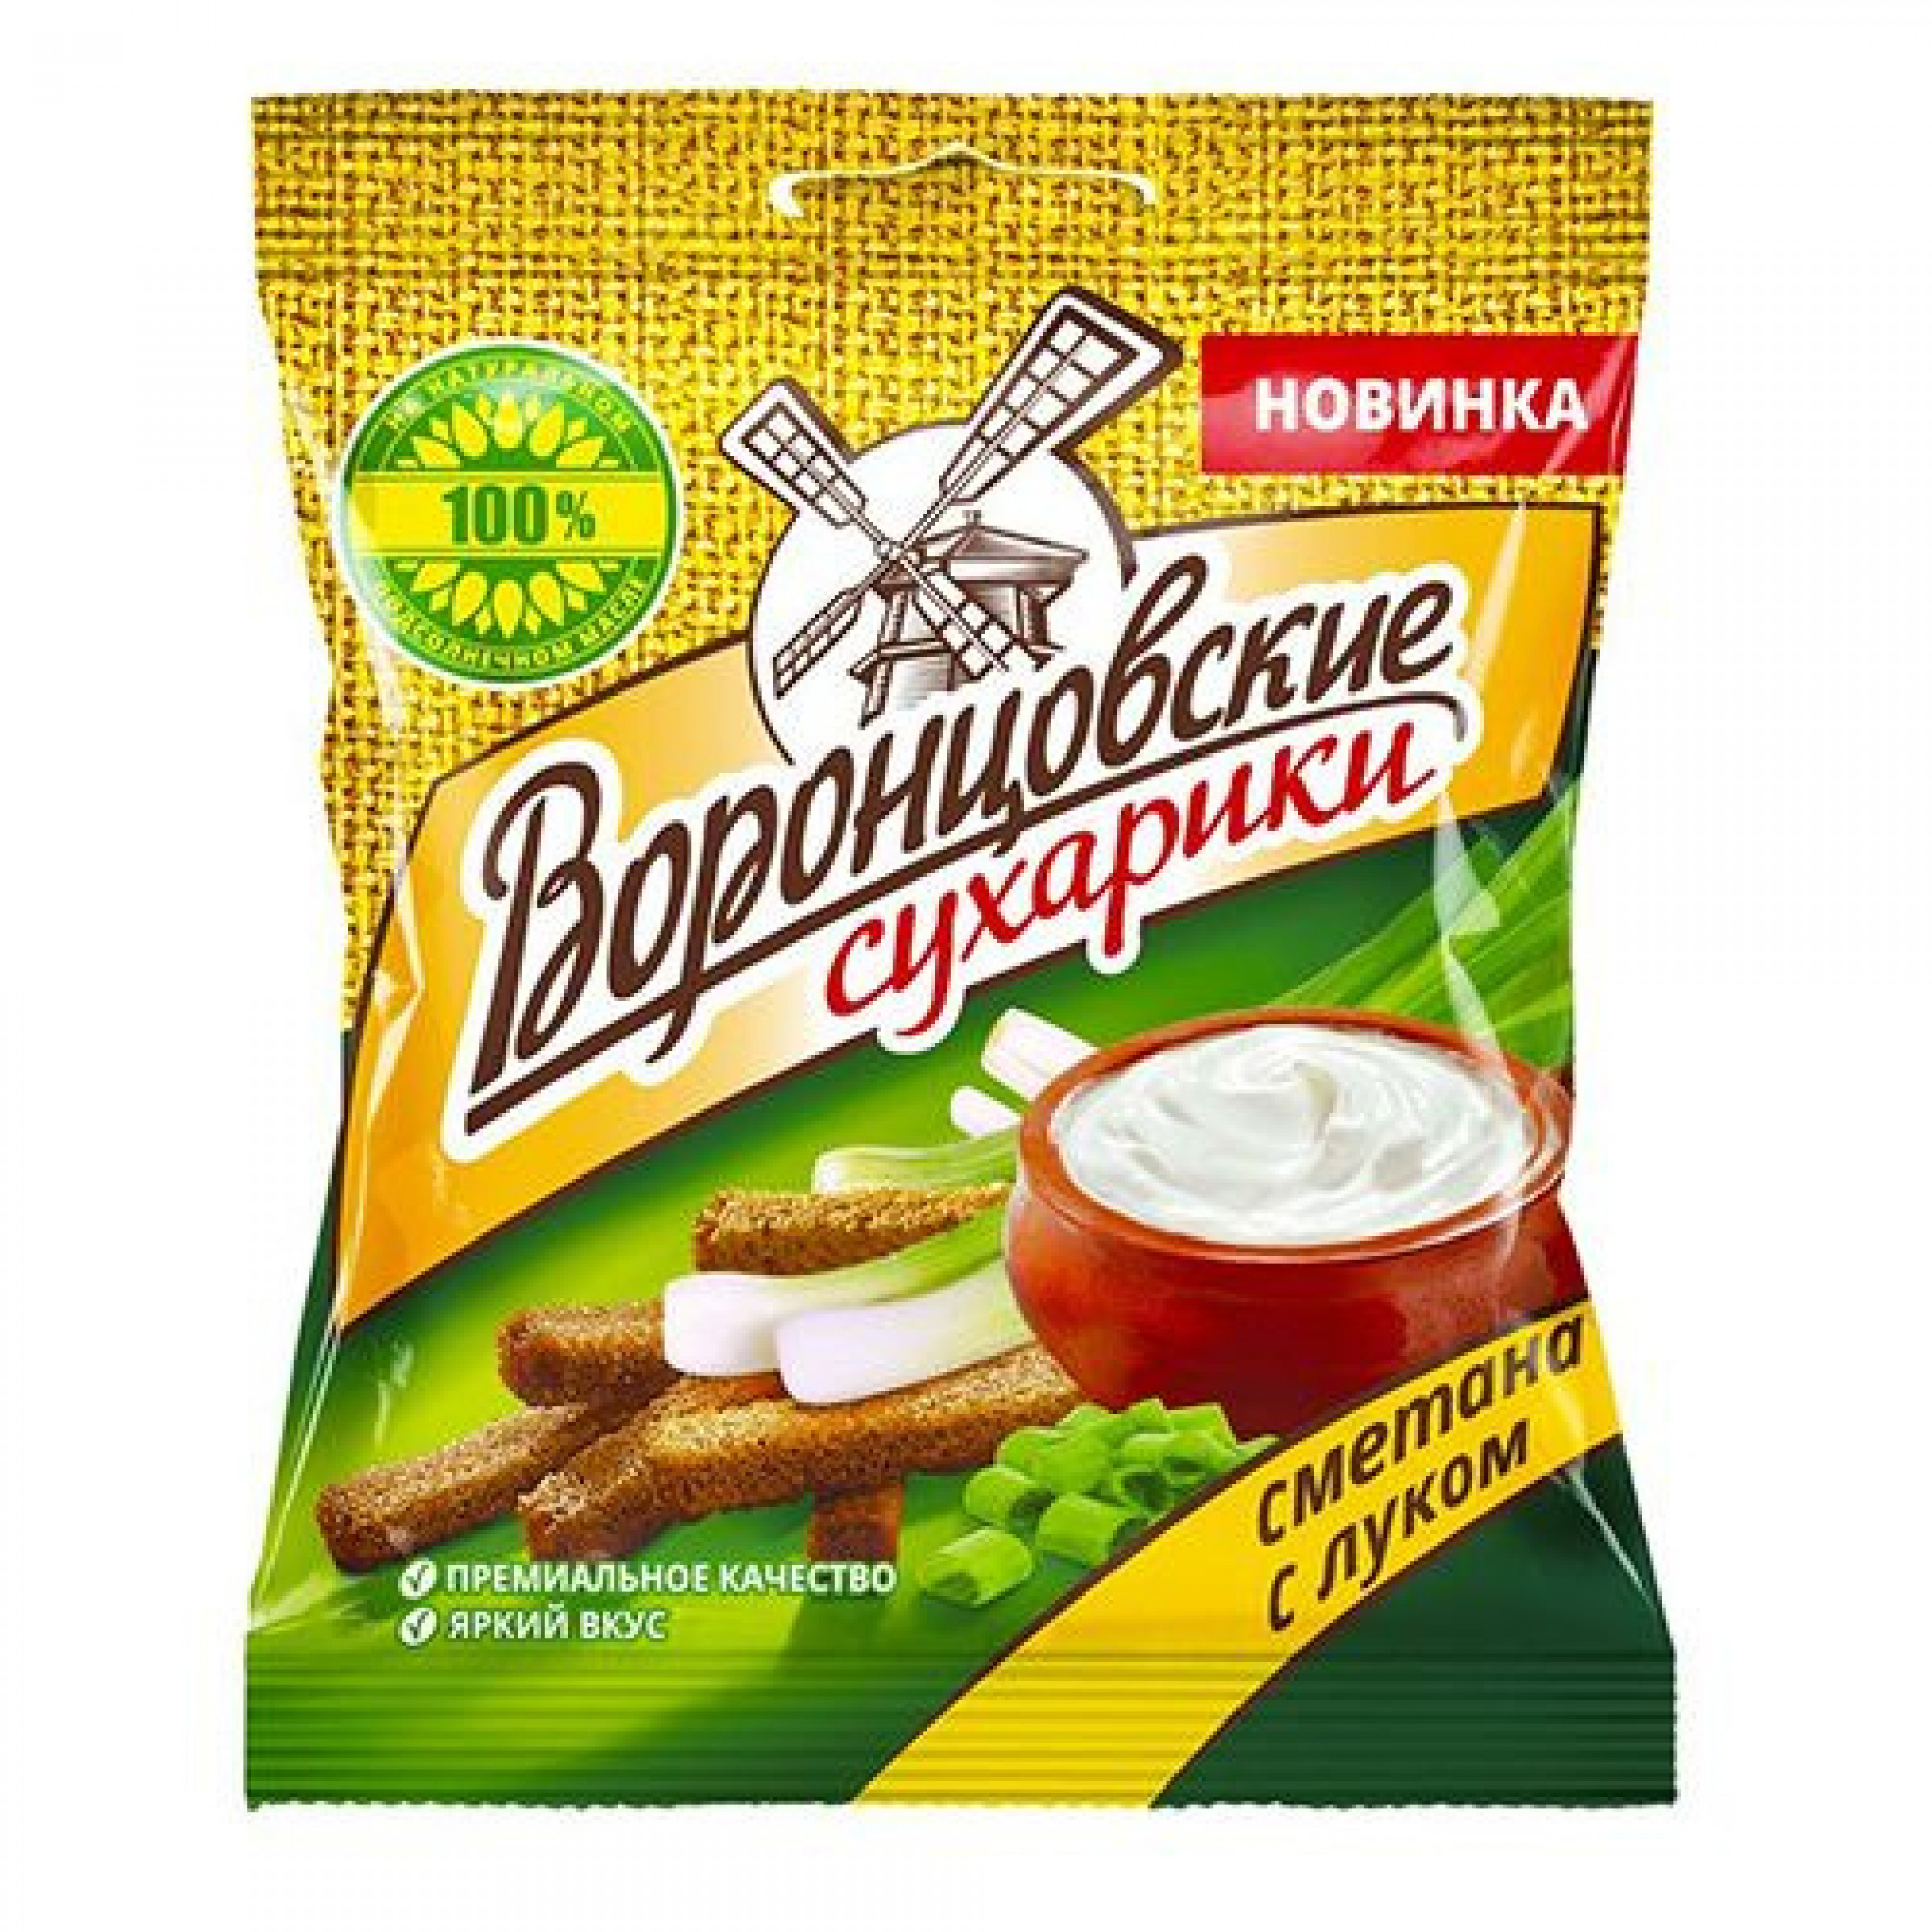 Сухарики Воронцовские ржано-пшеничные со вкусом сметана и лук, 40 г